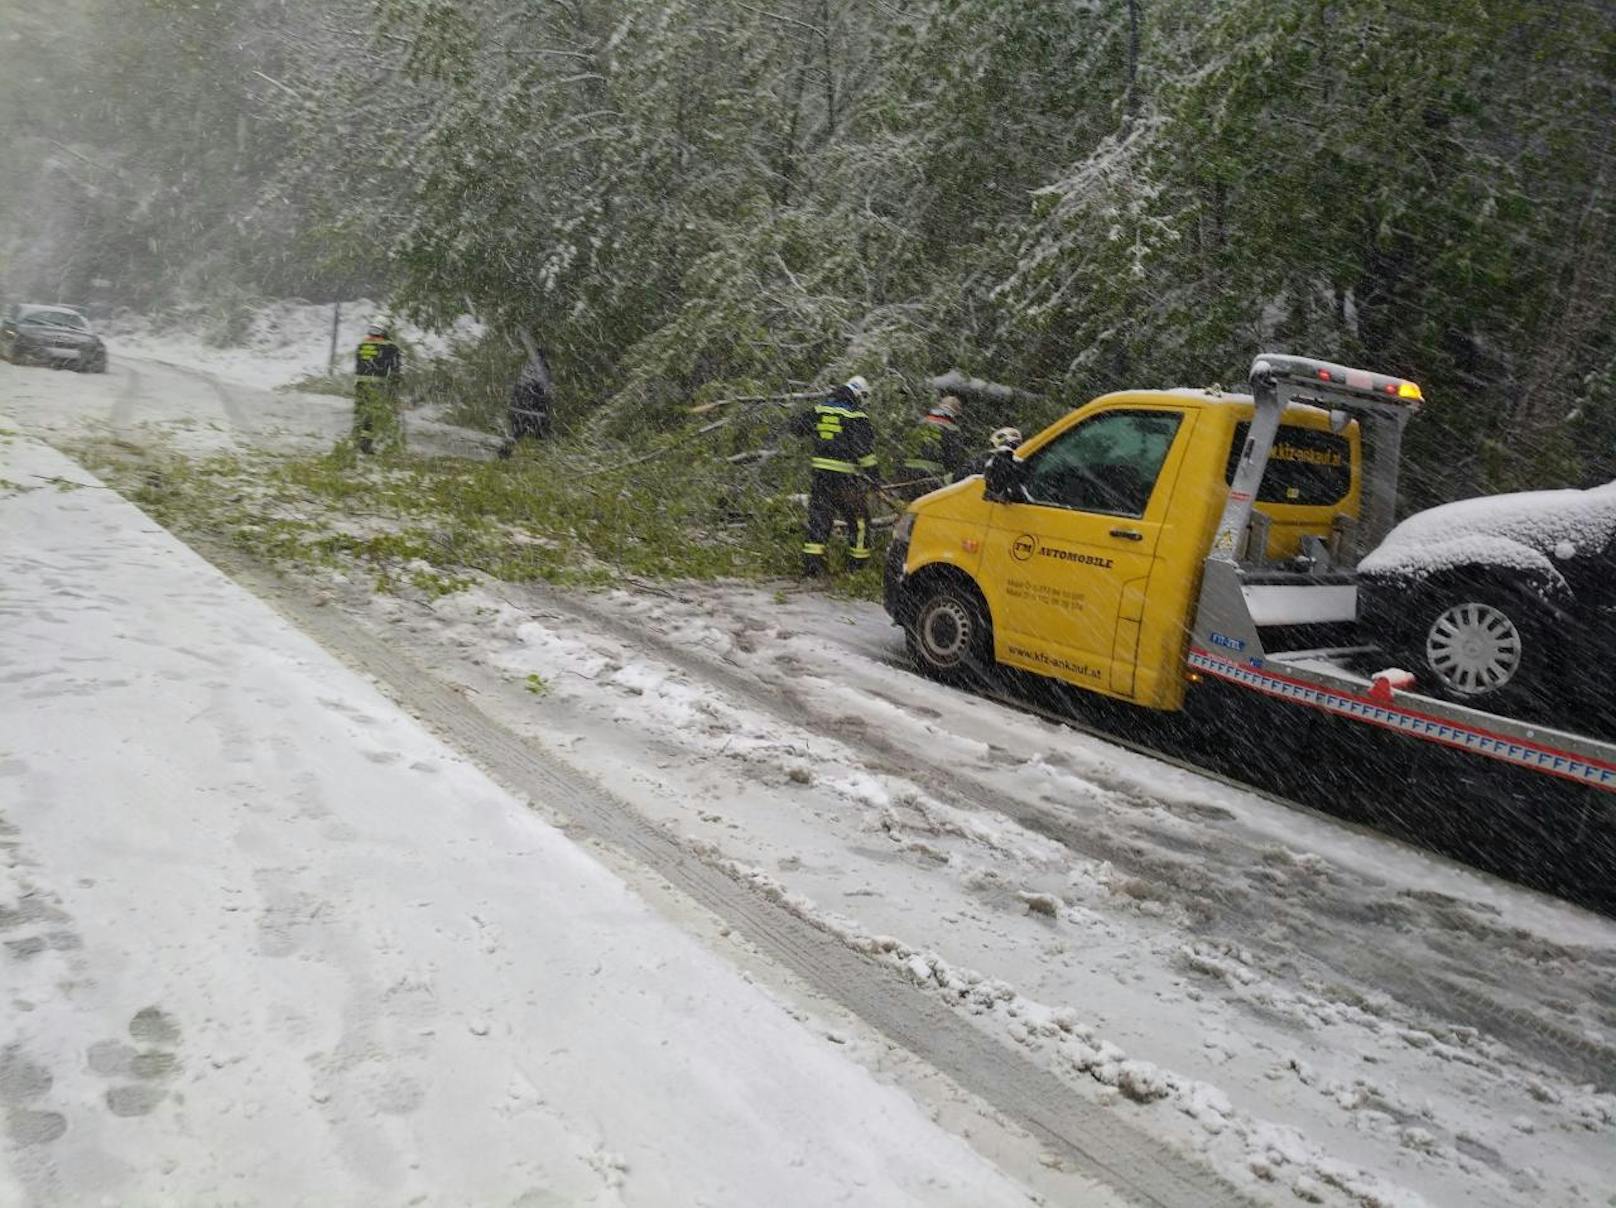 Mehrere Bäume sind wegen des Schneesturms umgefallen und auf Autos gestürzt. Trotz jährlicher Warnungen seits der Feuerwehr, sein Fahrzeug bei Sturm nicht unter Bäumen zu parken!